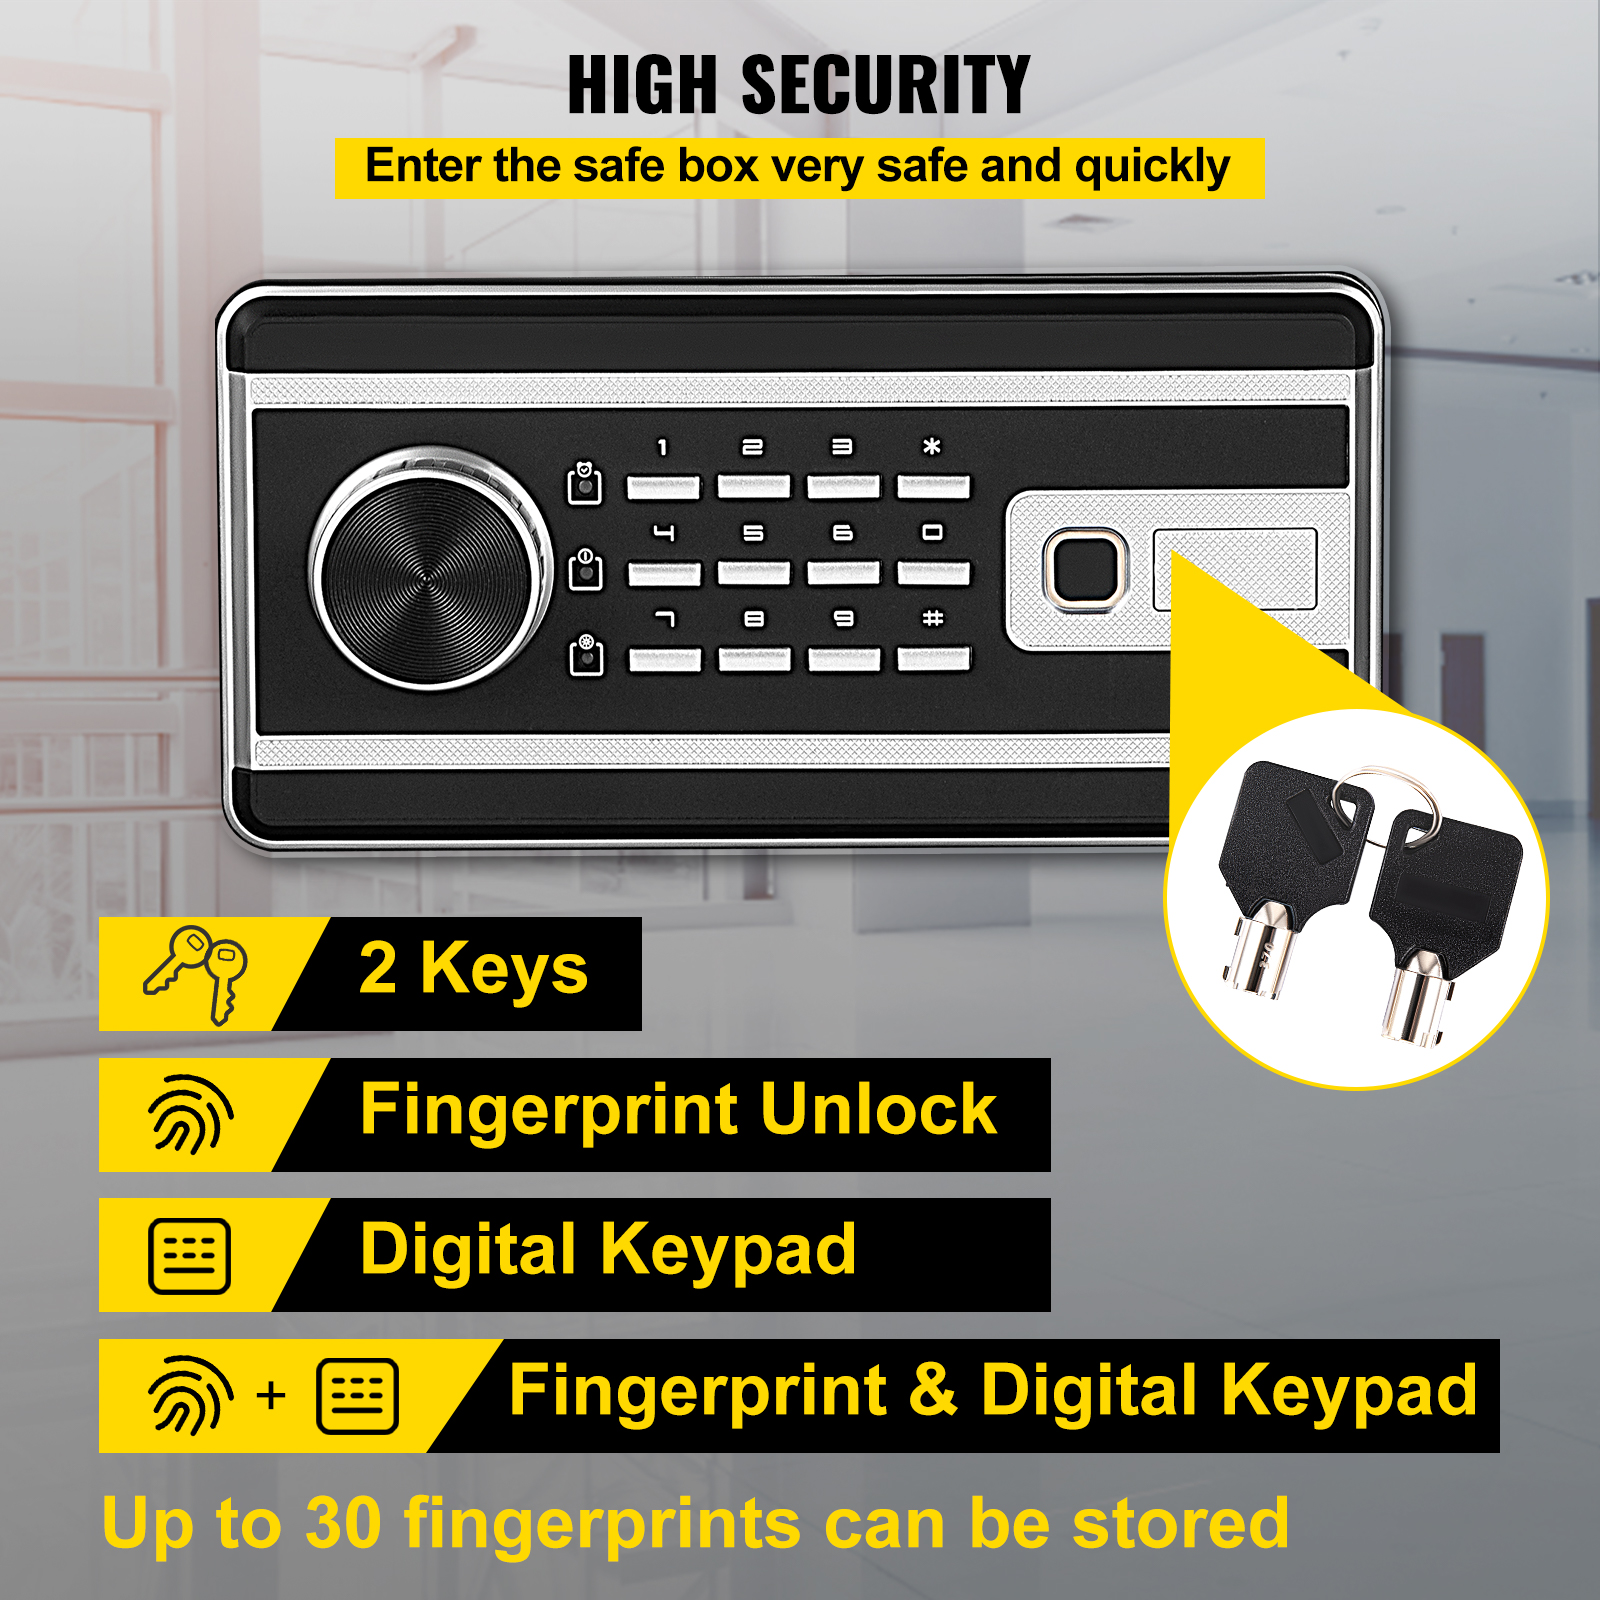 VEVORbrand Security Safe 2.1 CU.FT Fingerprint Safe Box for Money W/ 2 Keys & Digital Keypad, Q235 Steel Safe Box for Storing Cash, Jewelry, Pistols, Documents in Home & Office & Hotel - image 4 of 10